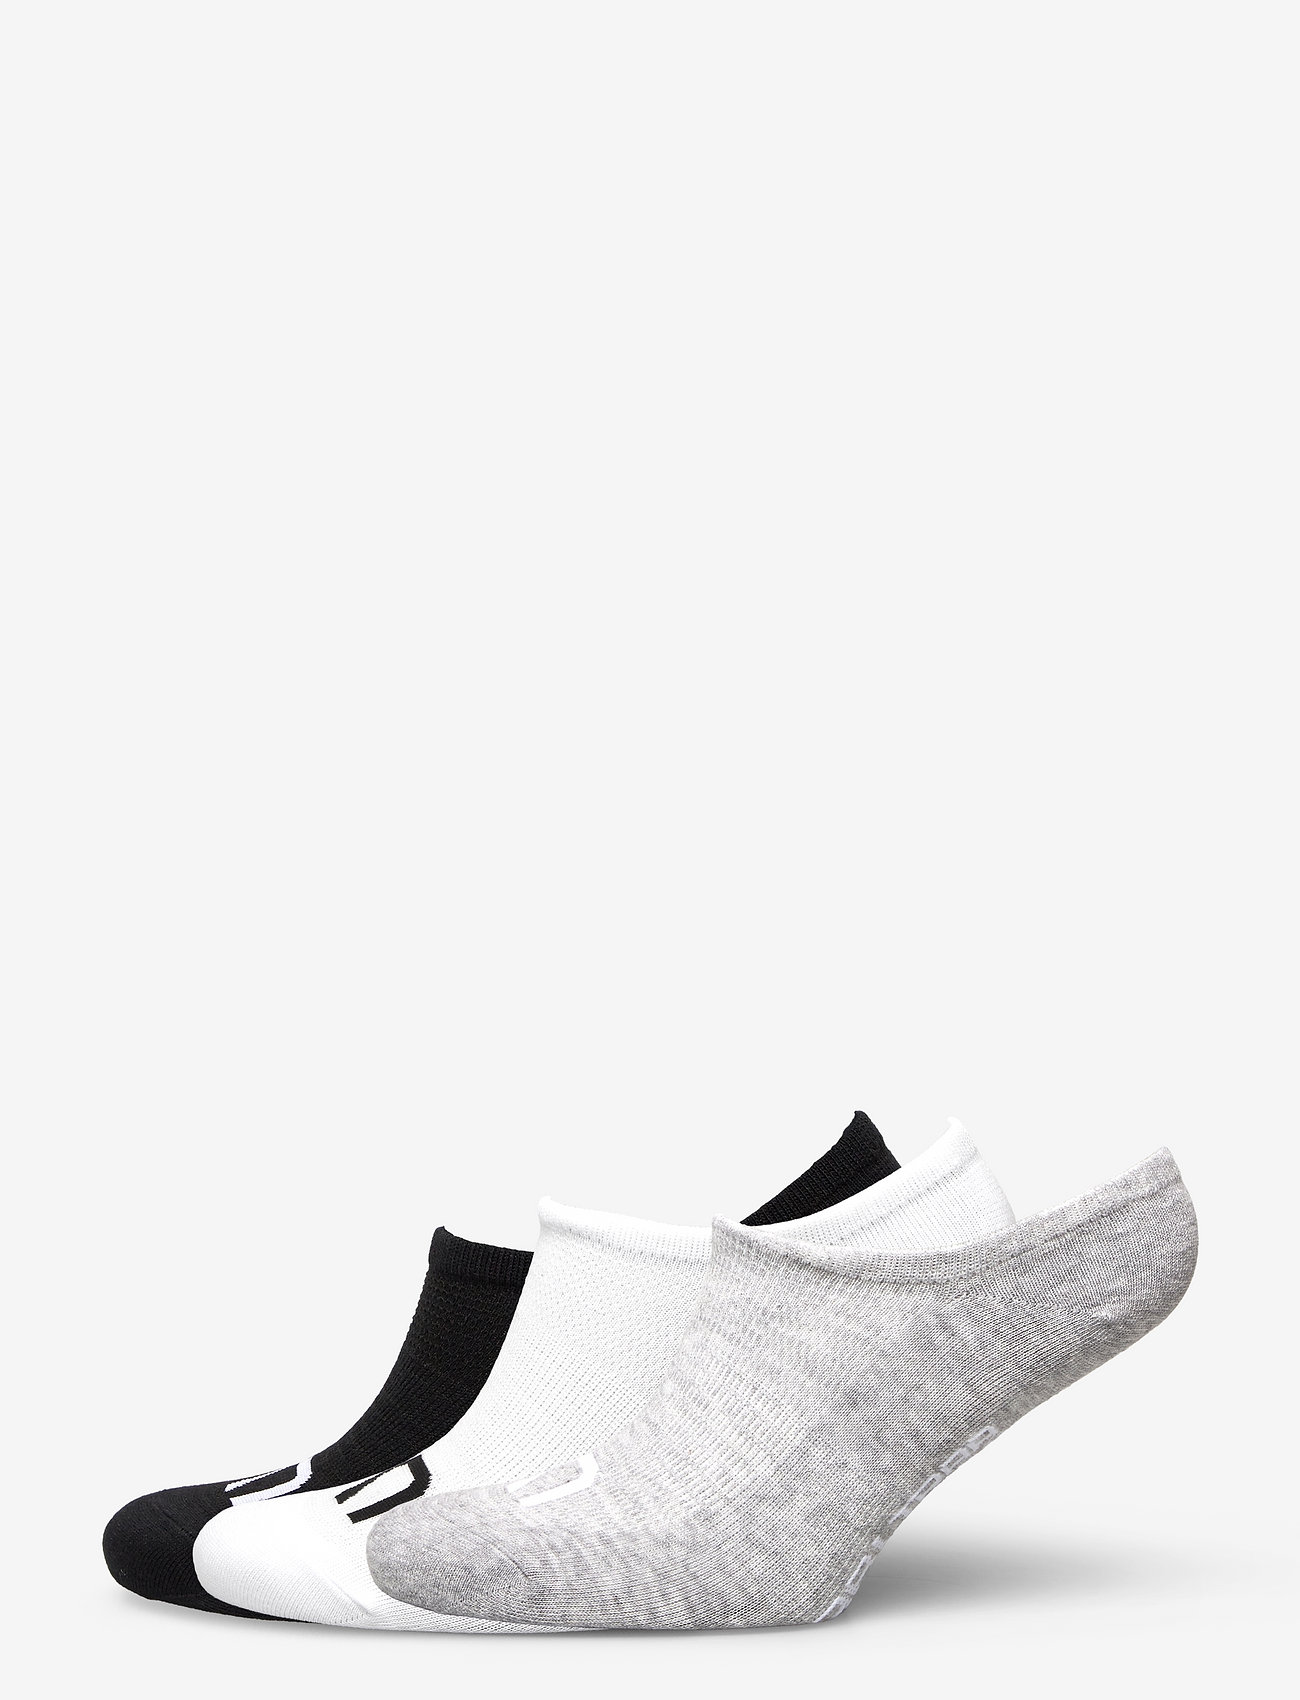 Kari Traa - HL SOCK 3PK - ankle socks - white - 0